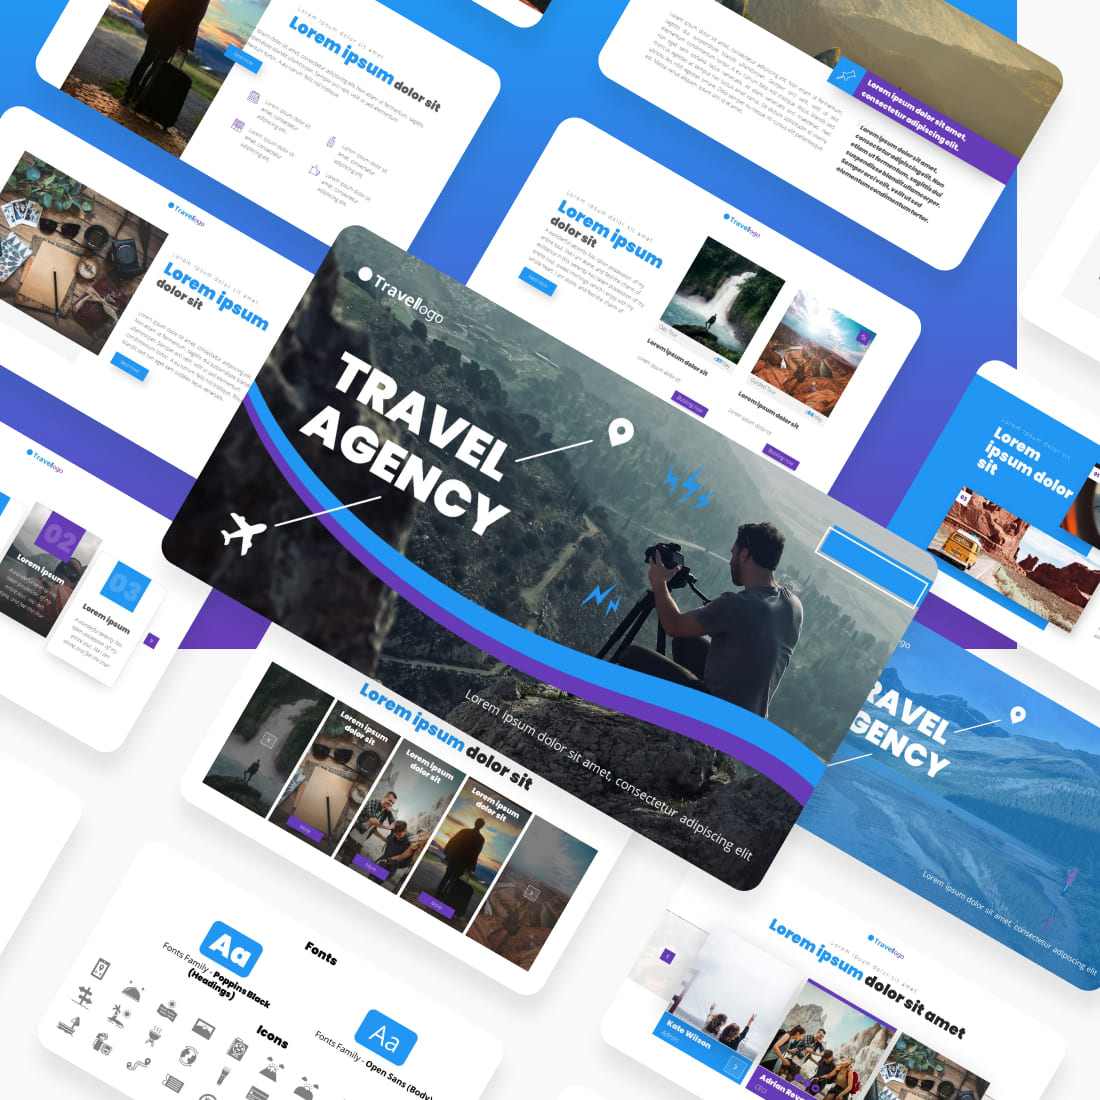 Travel Agency Presentstion: 50 Slides PPTX, KEY, Google Slides cover image.